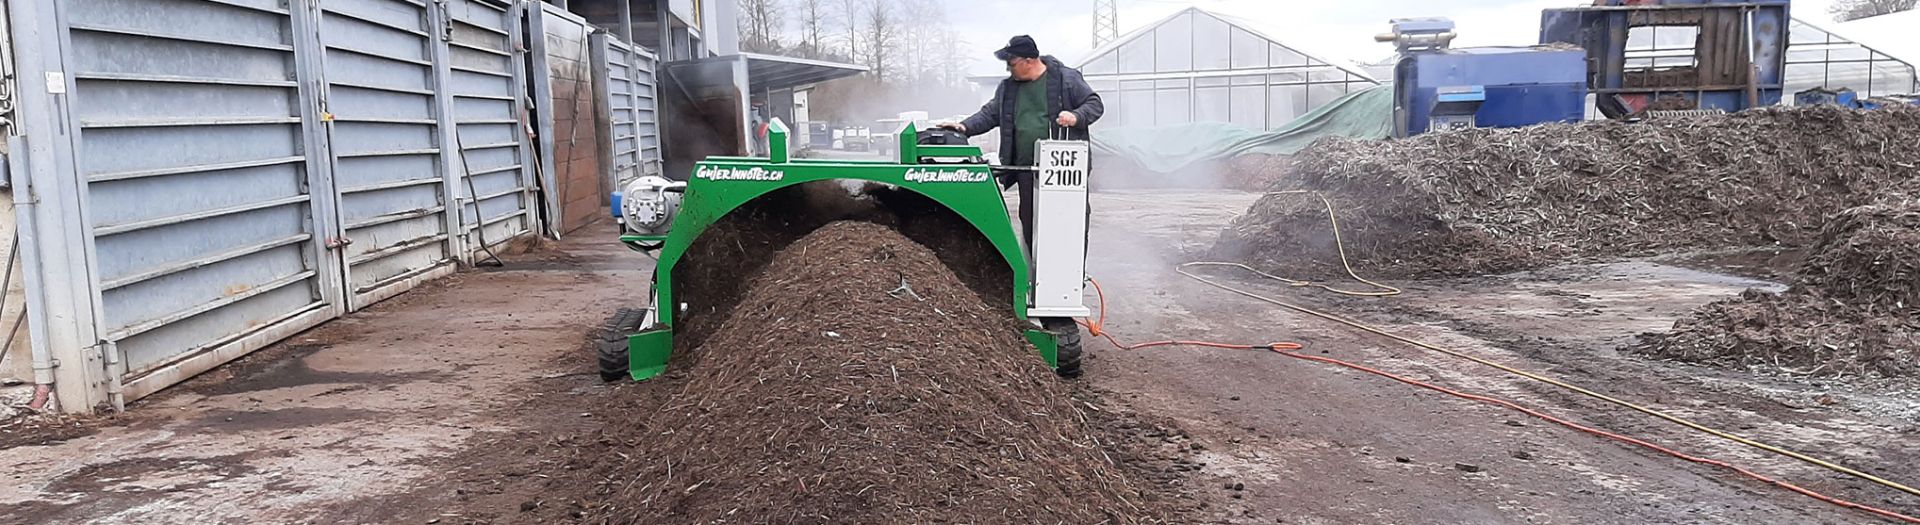 Compost turner SGF 2100 B & E teaser